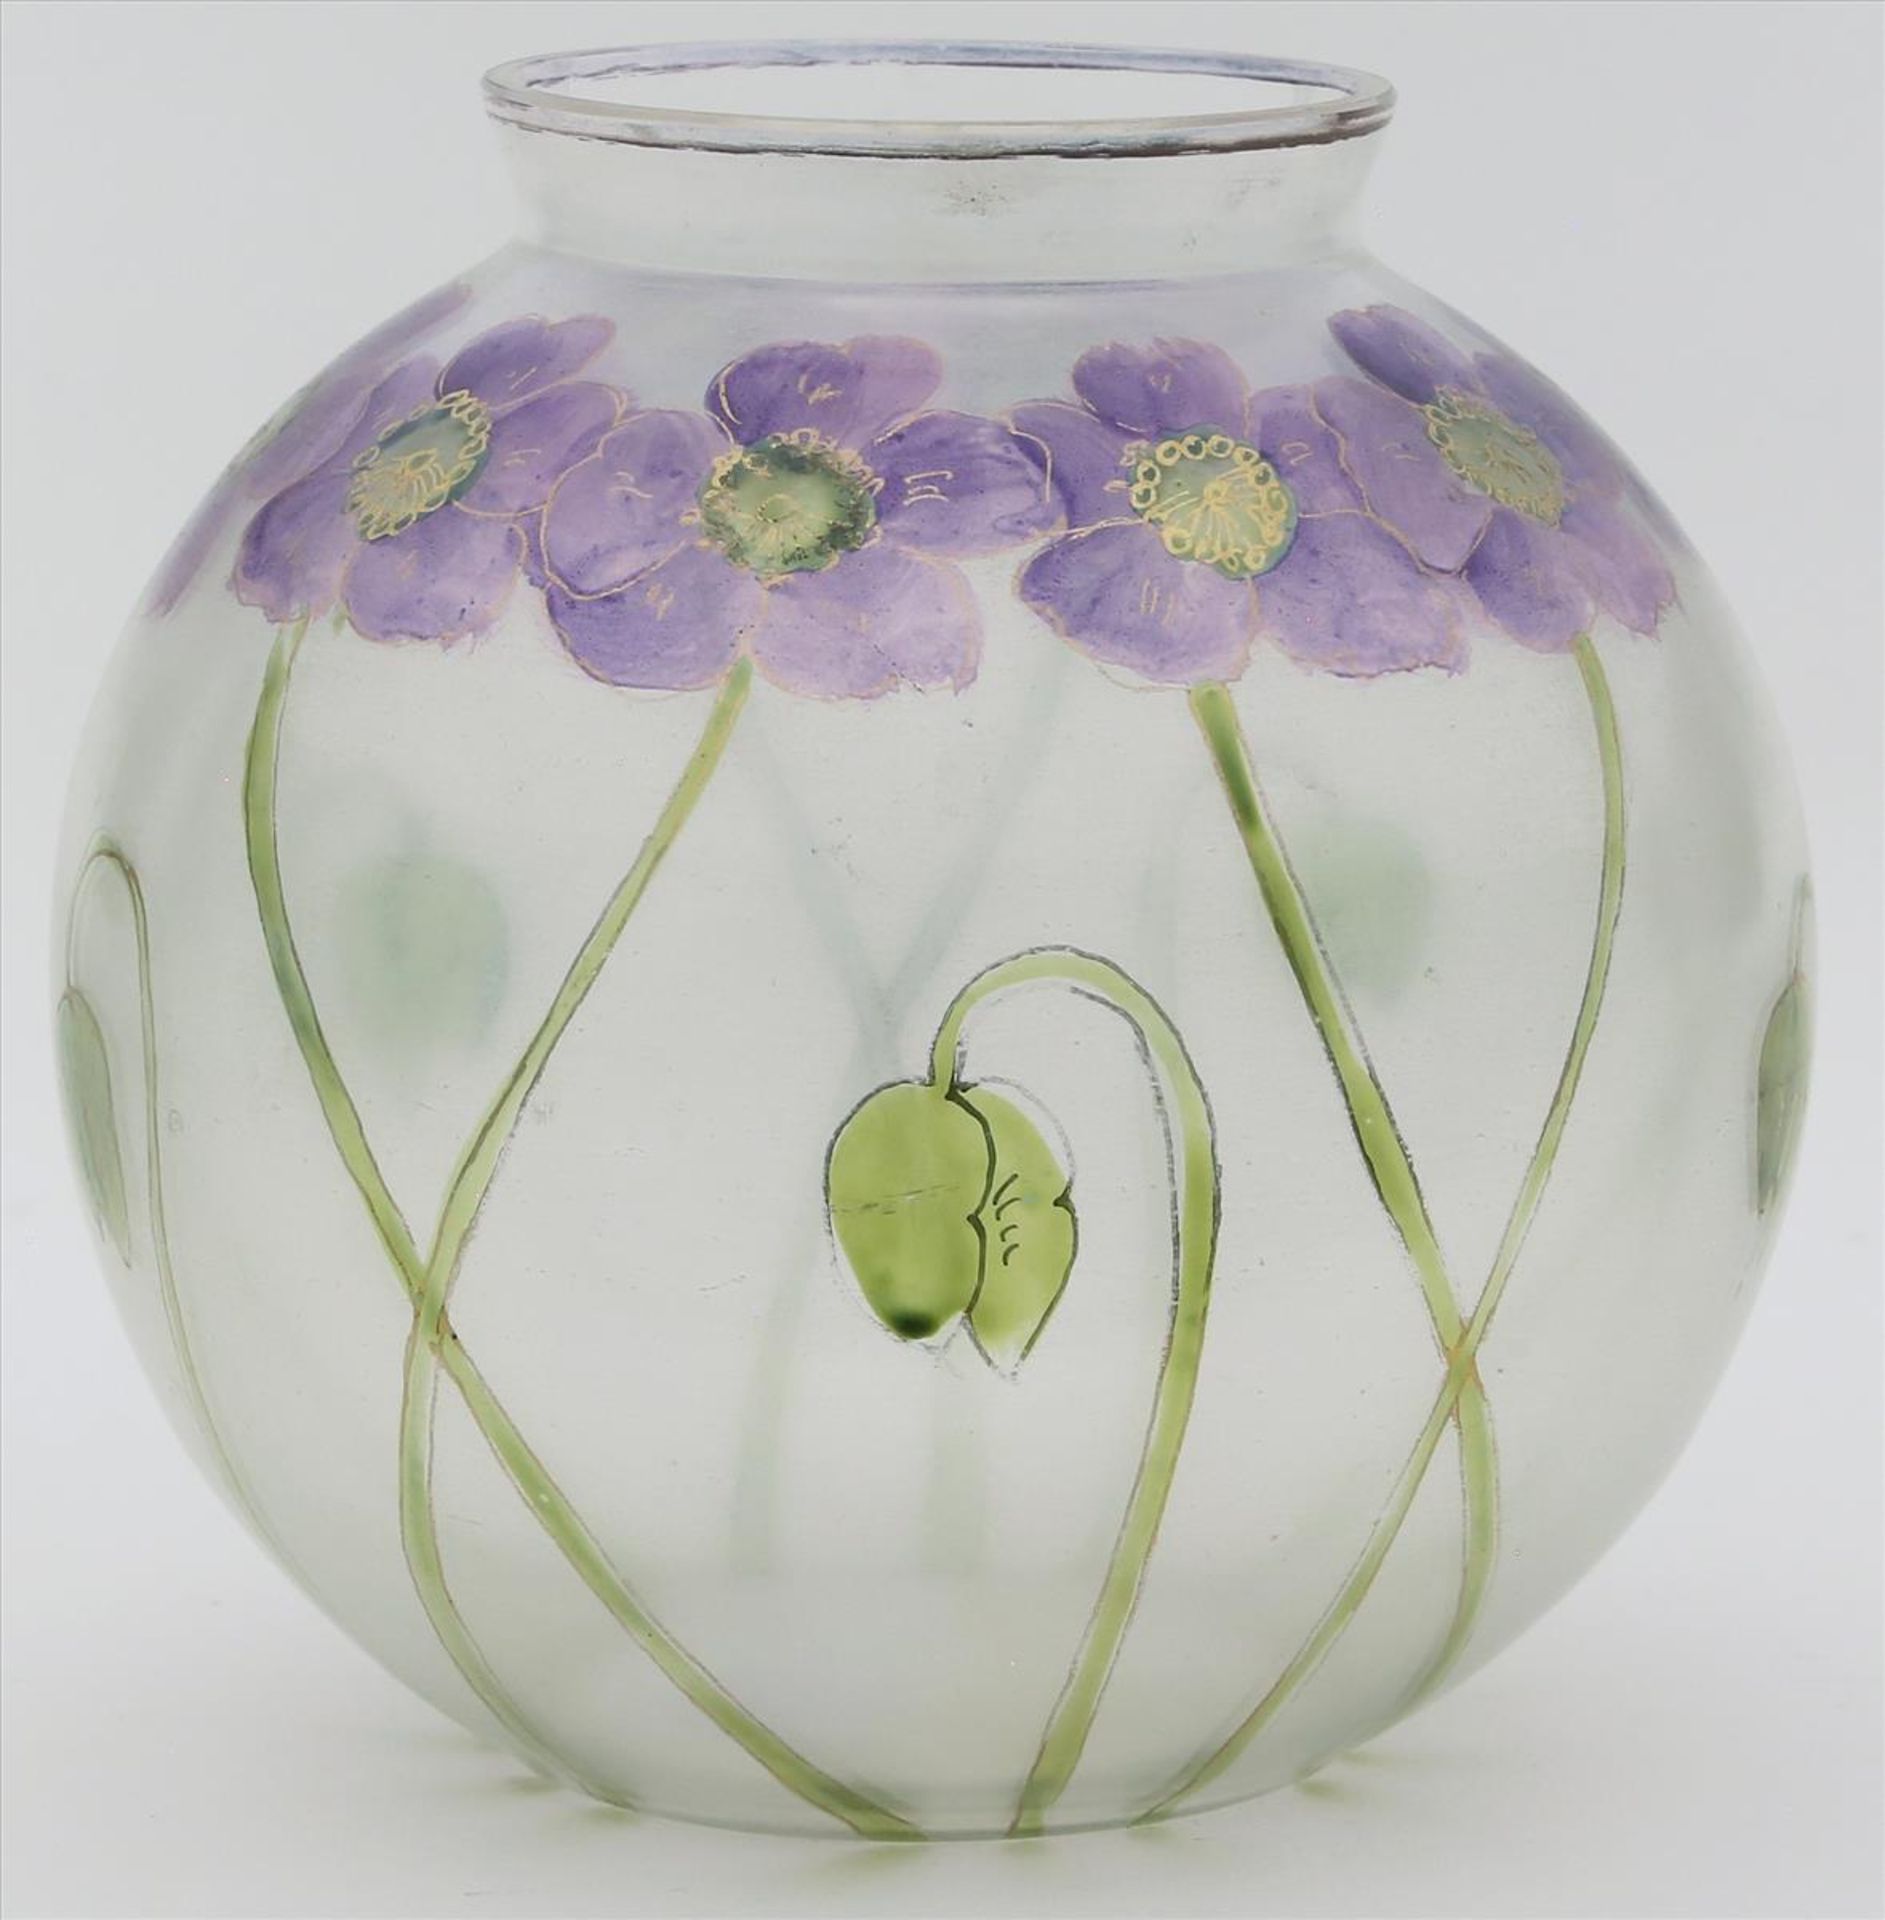 Jugendstil-Vase.Farbloses, matt geätztes Glas. Kugelig gebaucht. Umlaufend florale Bemalung in